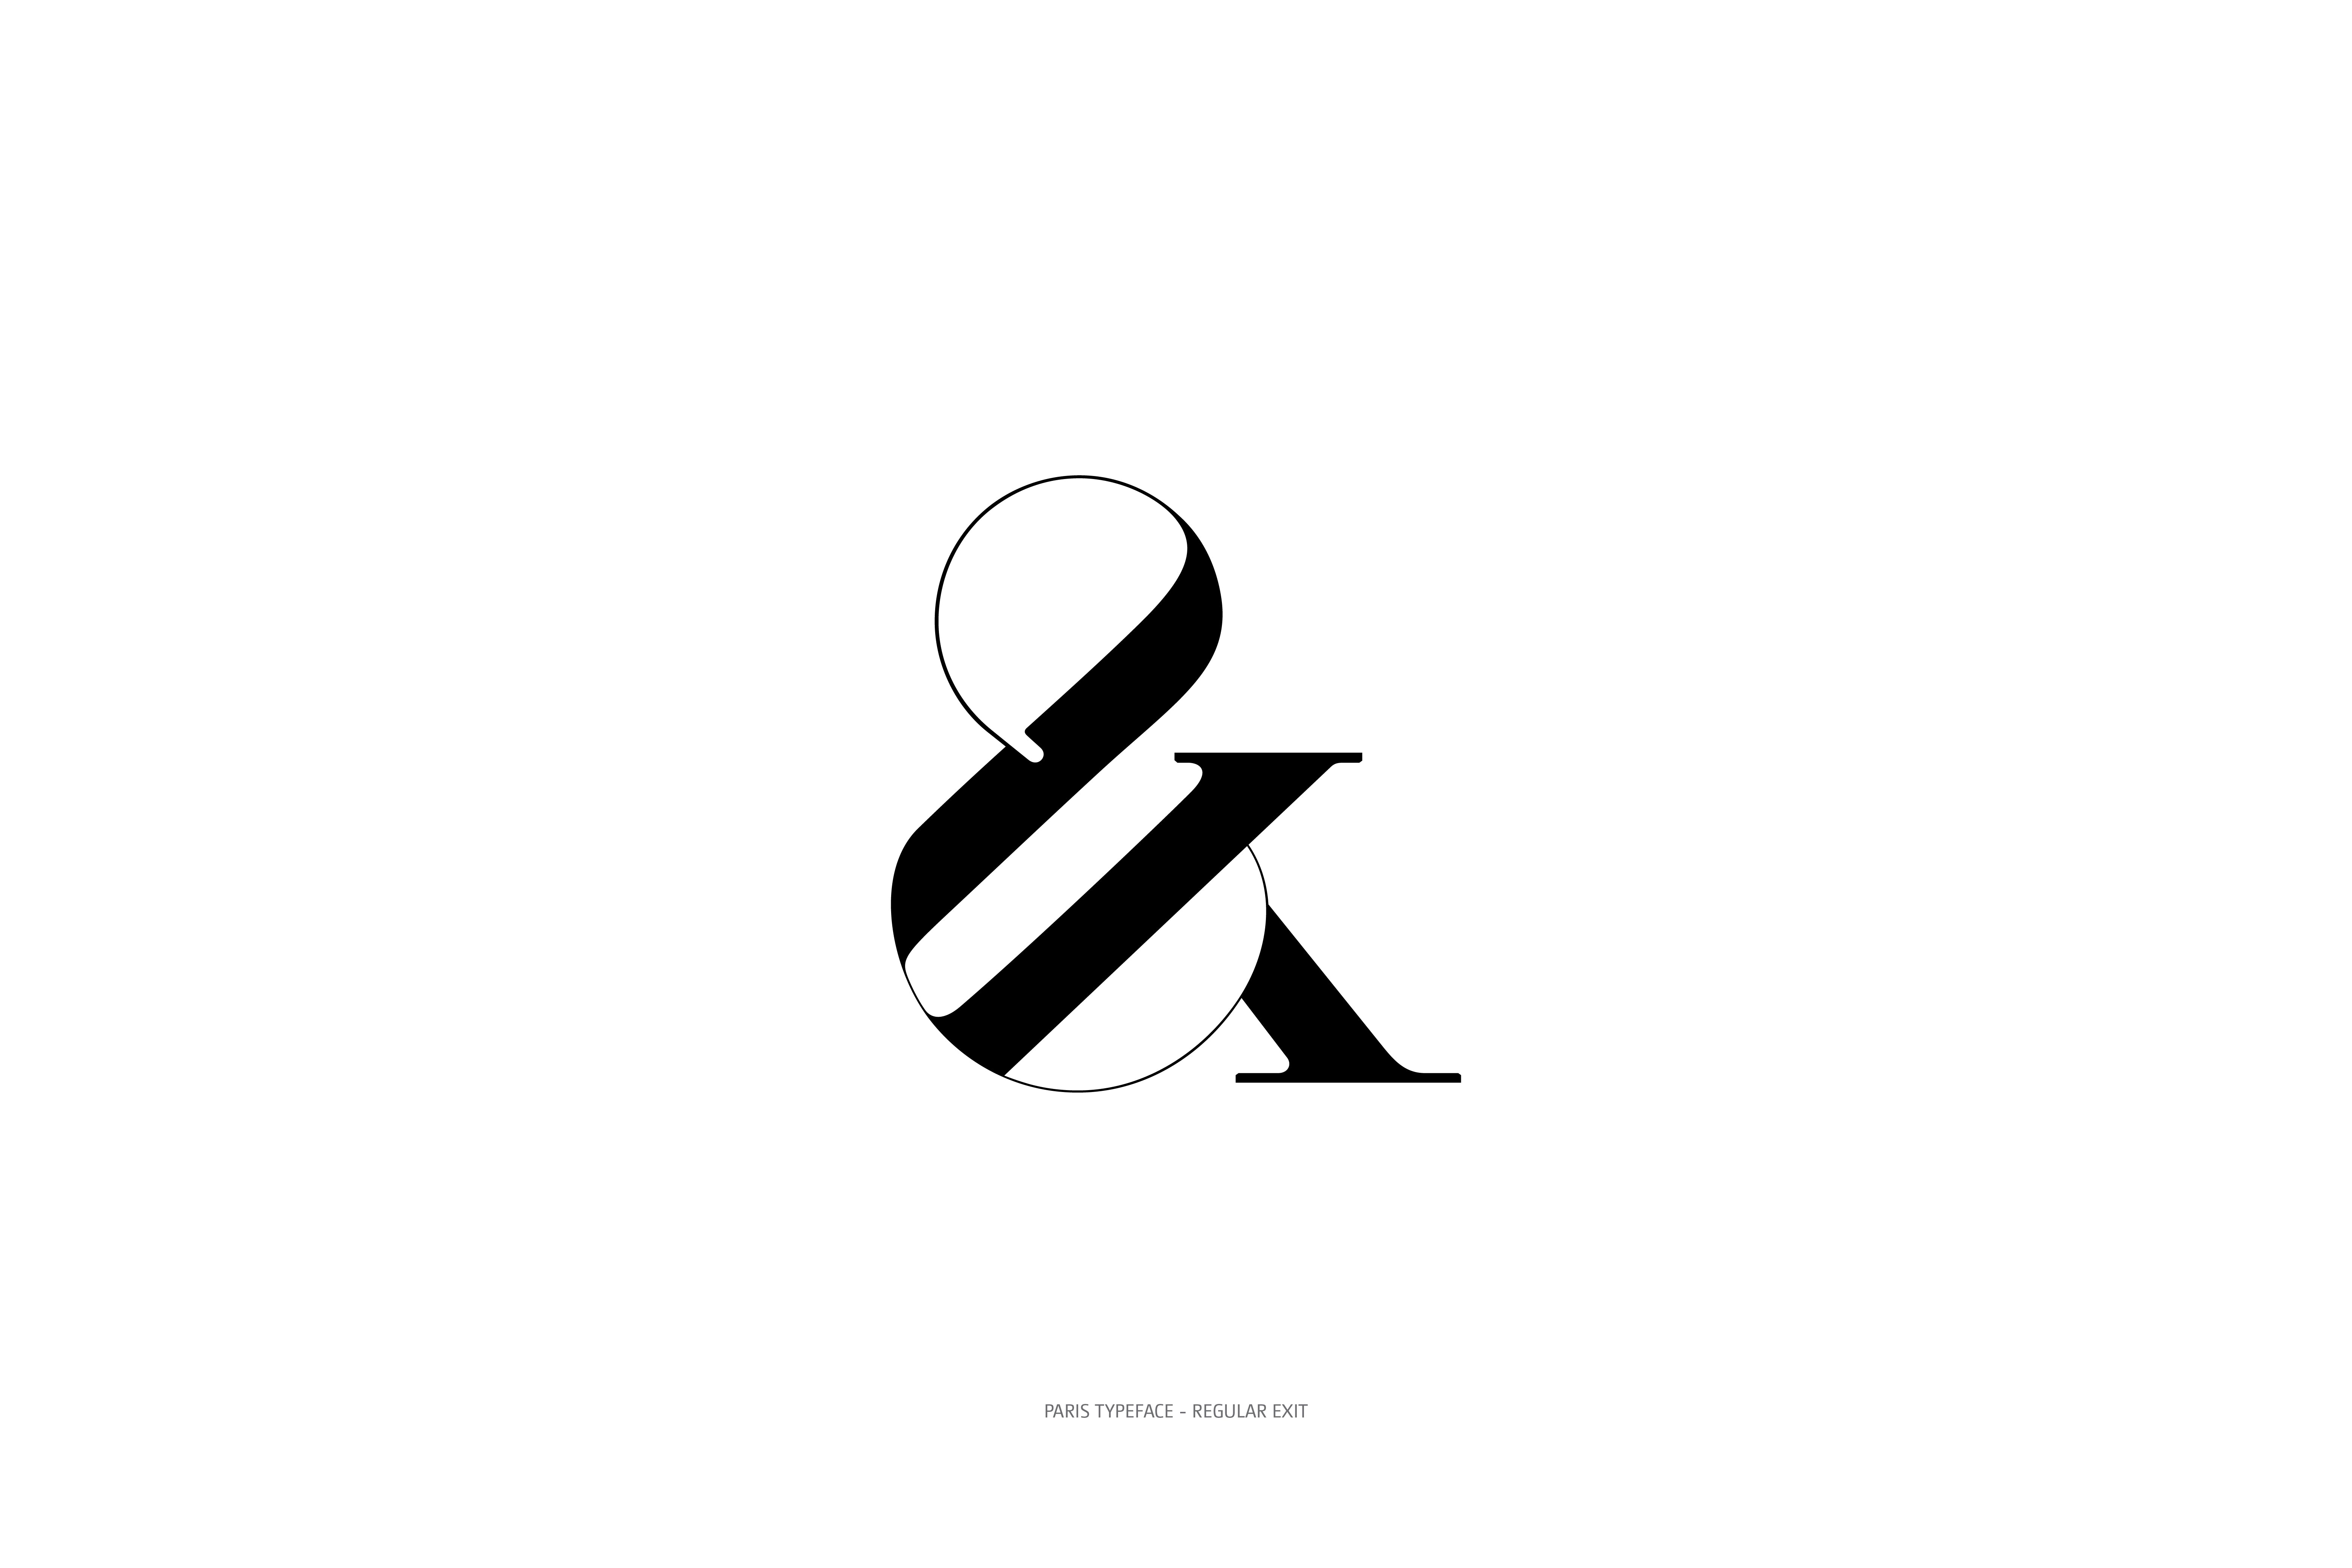 Paris Typeface Regular Exit ampersand